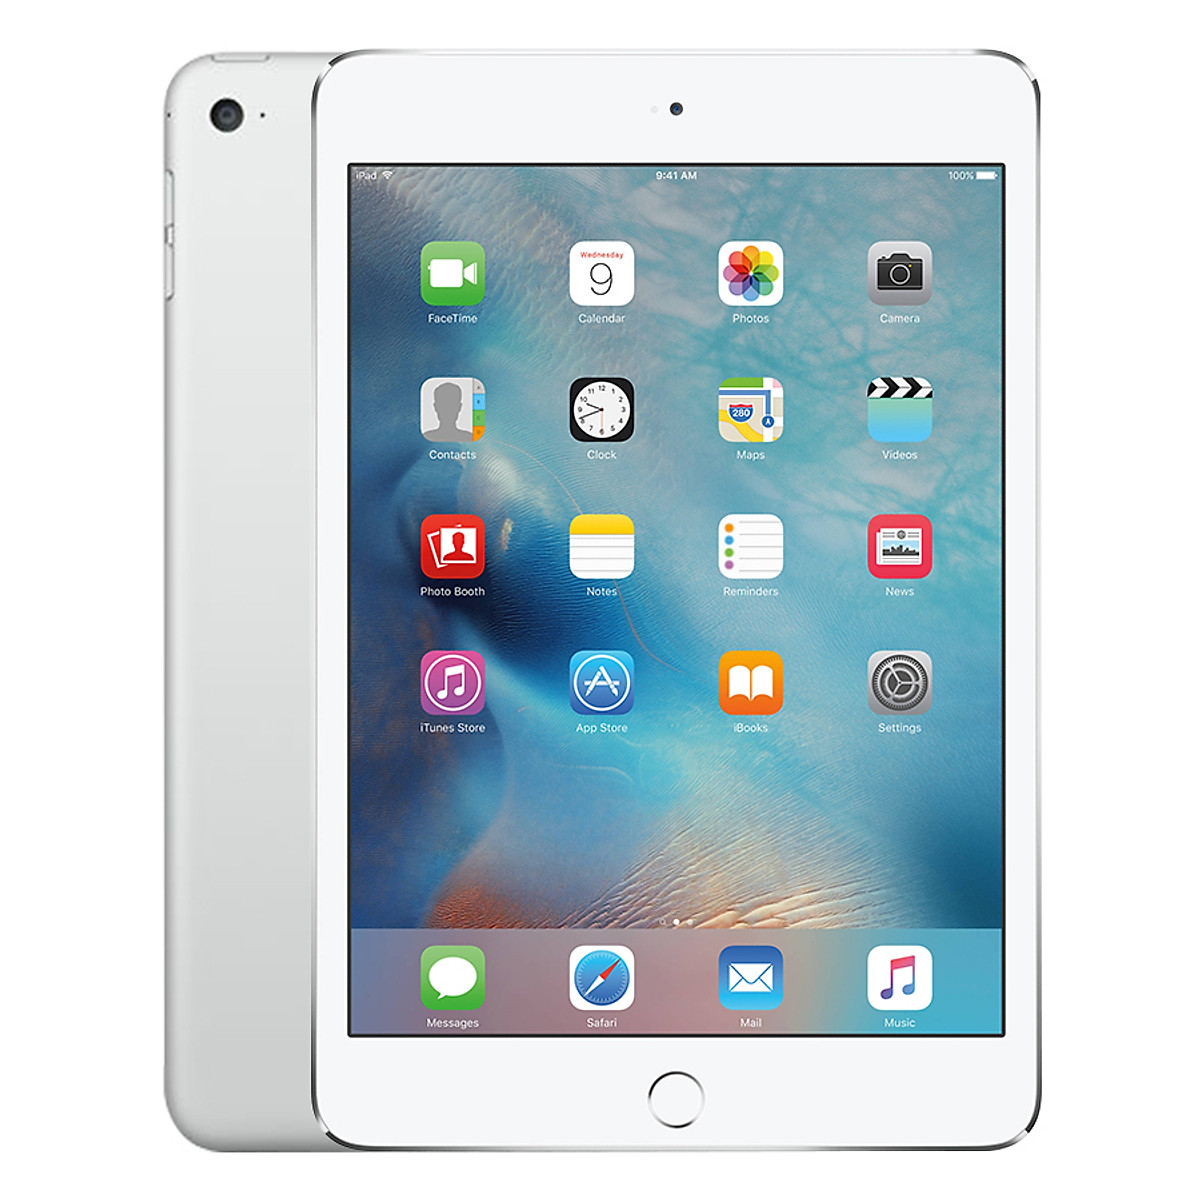 Apple iPad Mini 4 (Wifi + 3G) | Chính hãng - Giá rẻ - Chất lượng - Ship toàn quốc